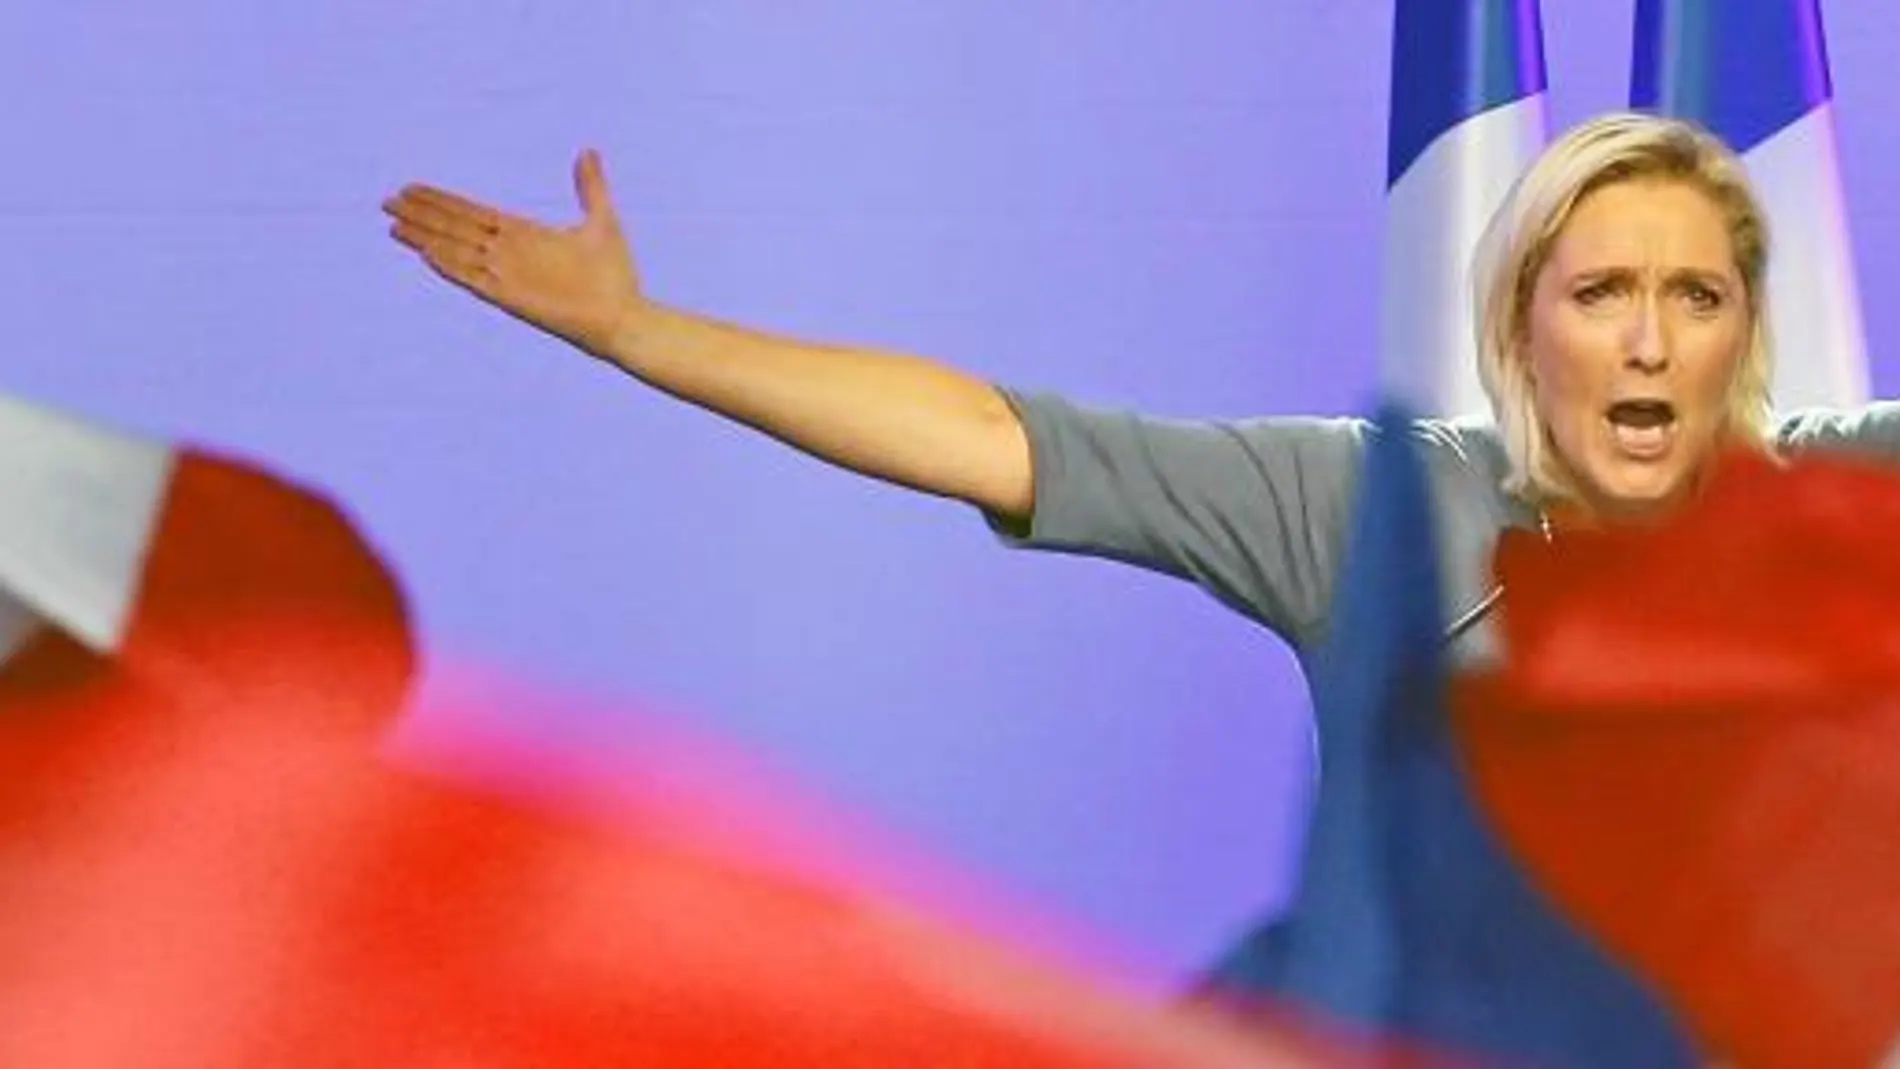 Marion-Maréchal, la sobrina de Marine Le Pen, podría estar moviendo los hilos para tomar el control del FN. Está en cuestión el liderazgo del partido de ultraderecha